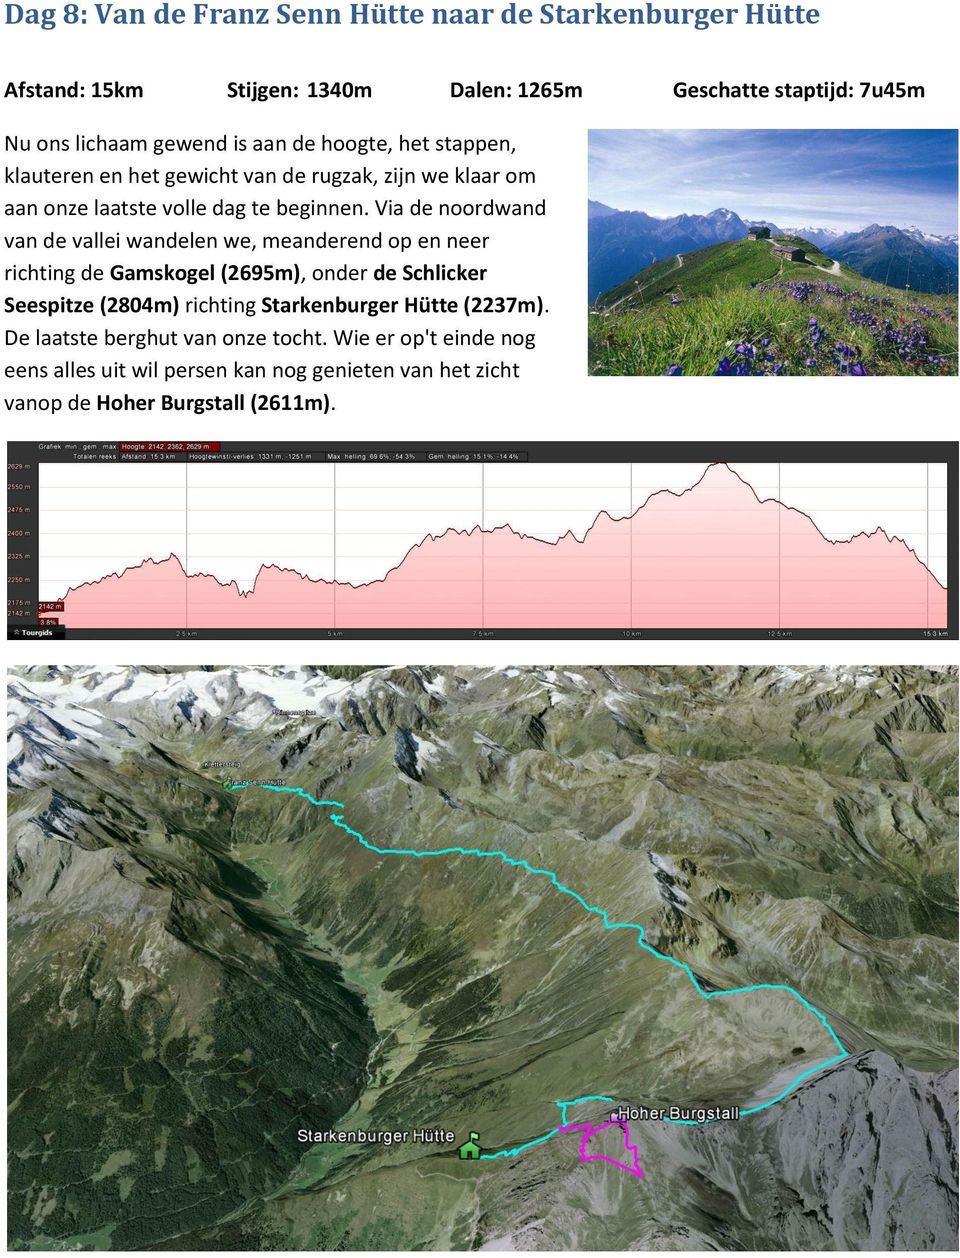 Via de noordwand van de vallei wandelen we, meanderend op en neer richting de Gamskogel (2695m), onder de Schlicker Seespitze (2804m) richting